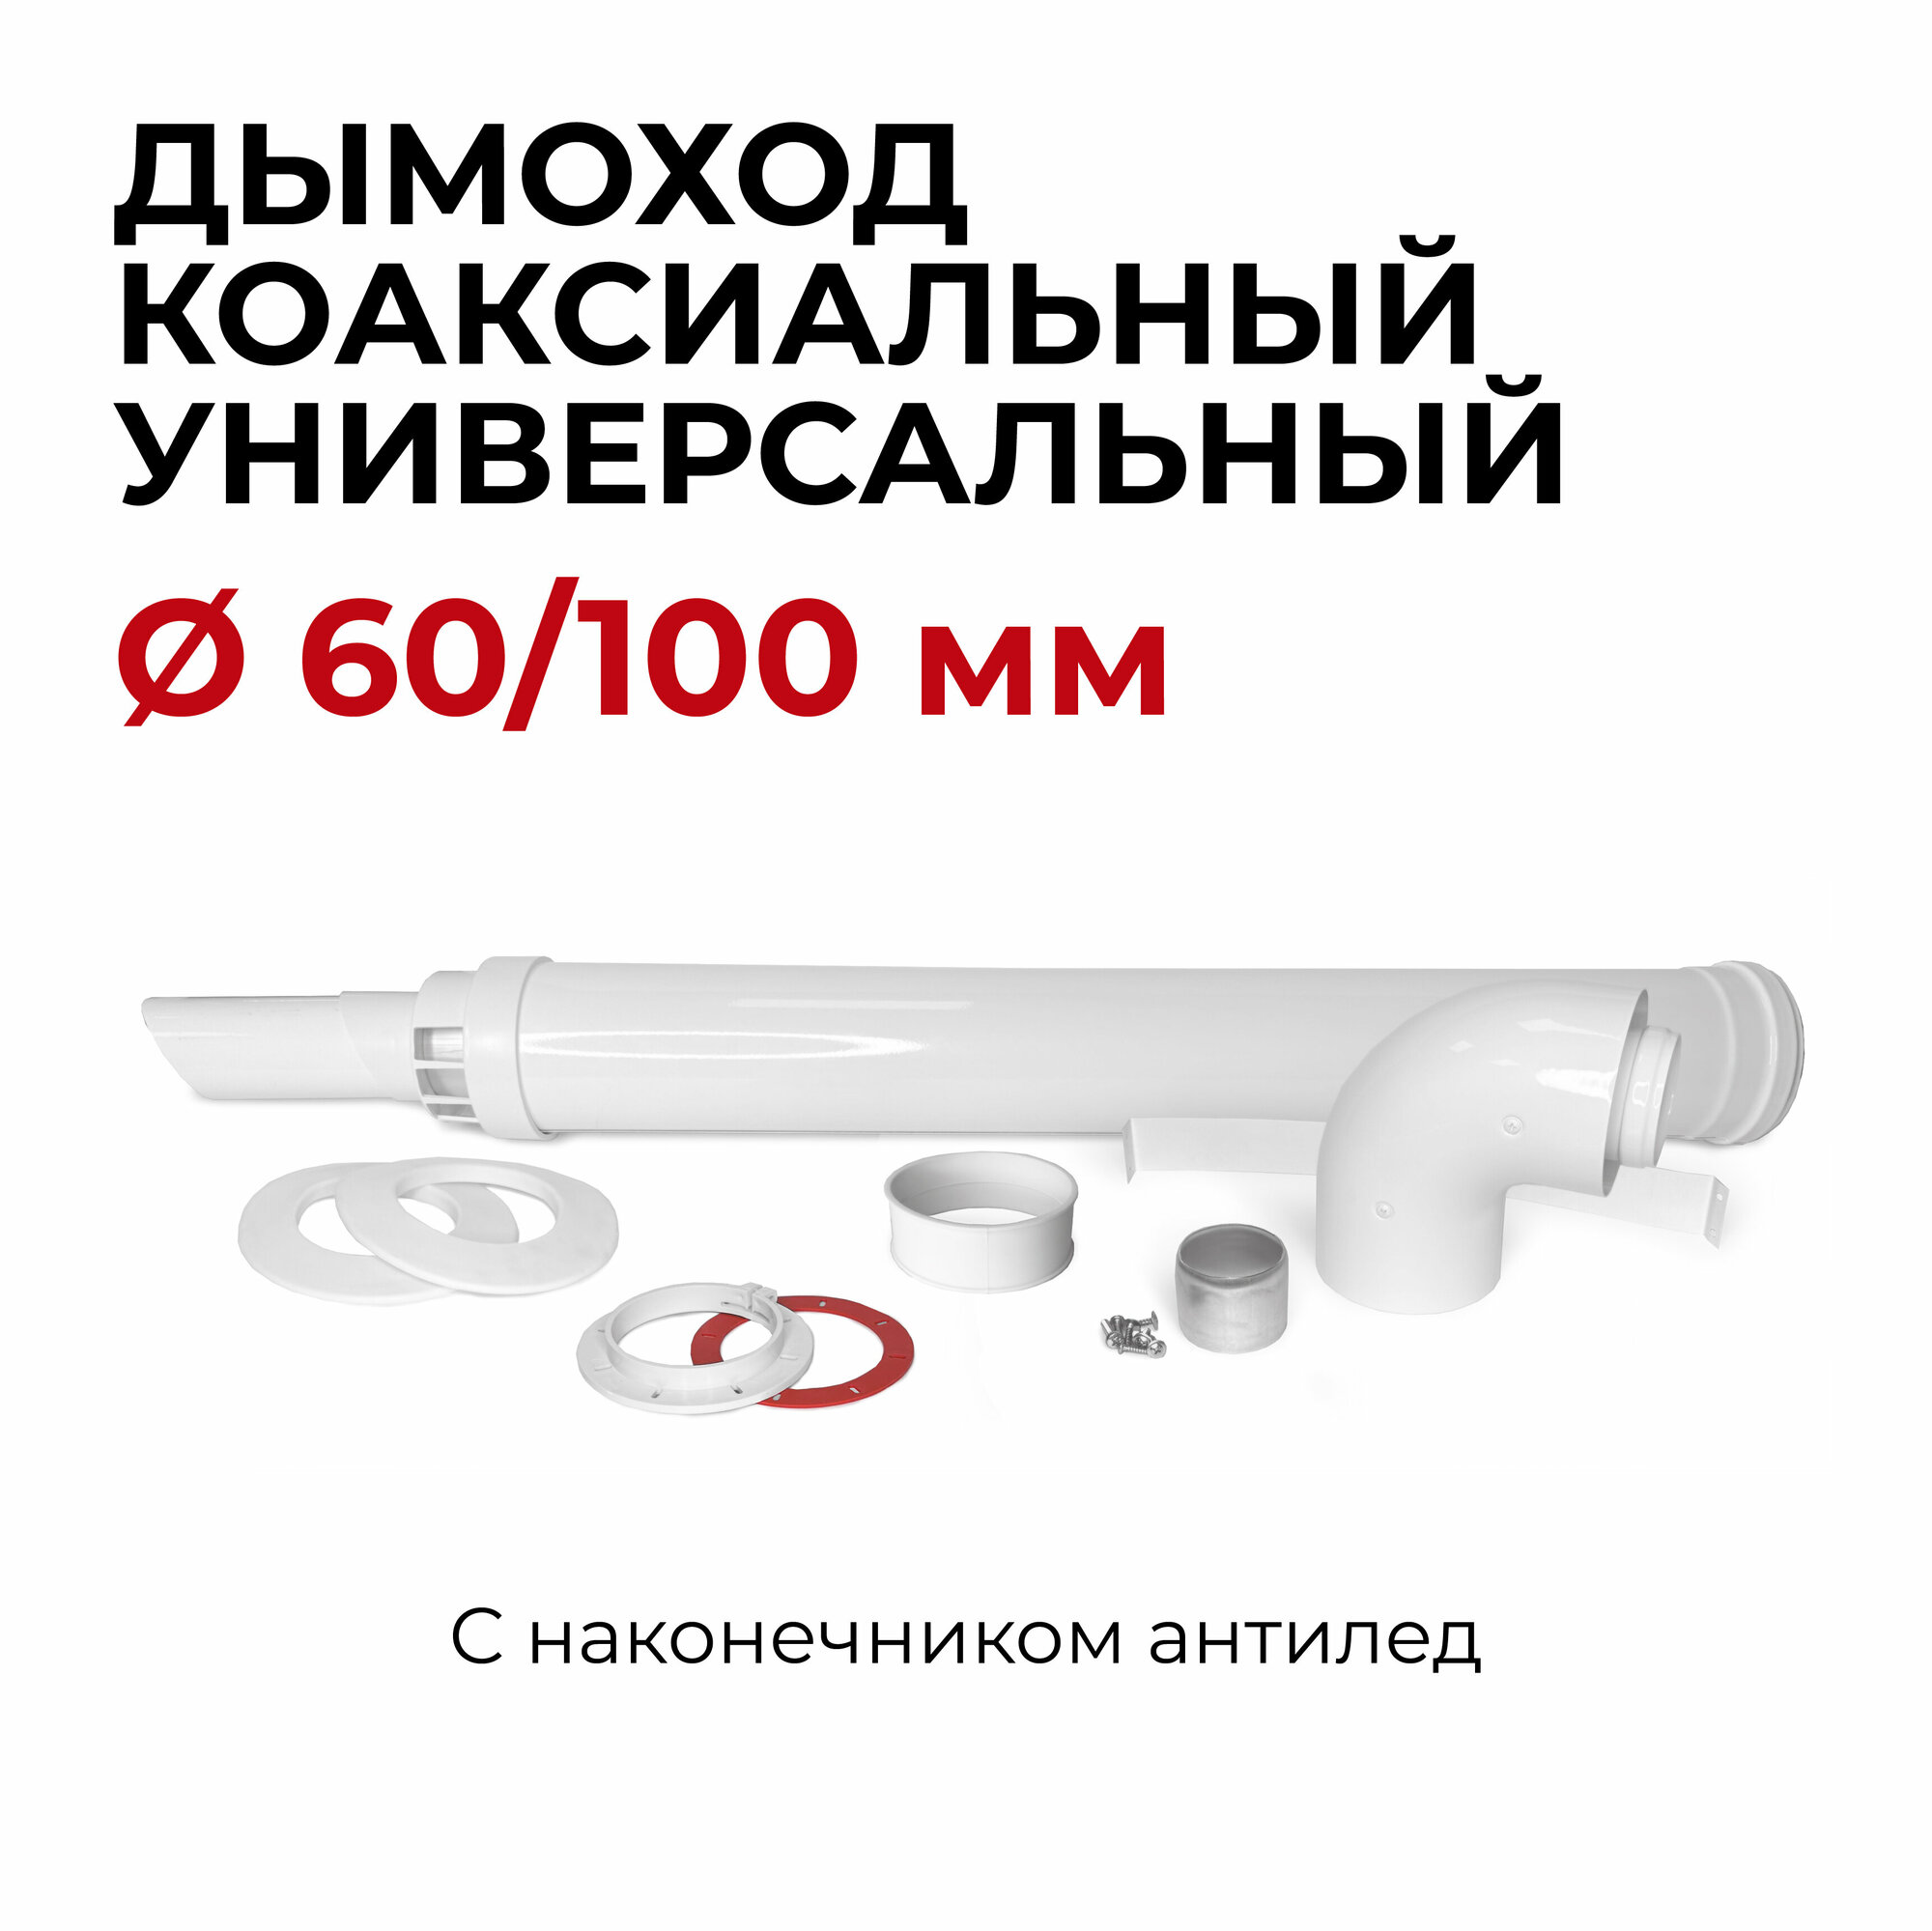 Универсальный коаксиальный дымоход комплект с наконечником антилед М 60/100 мм "Прок" 950 мм